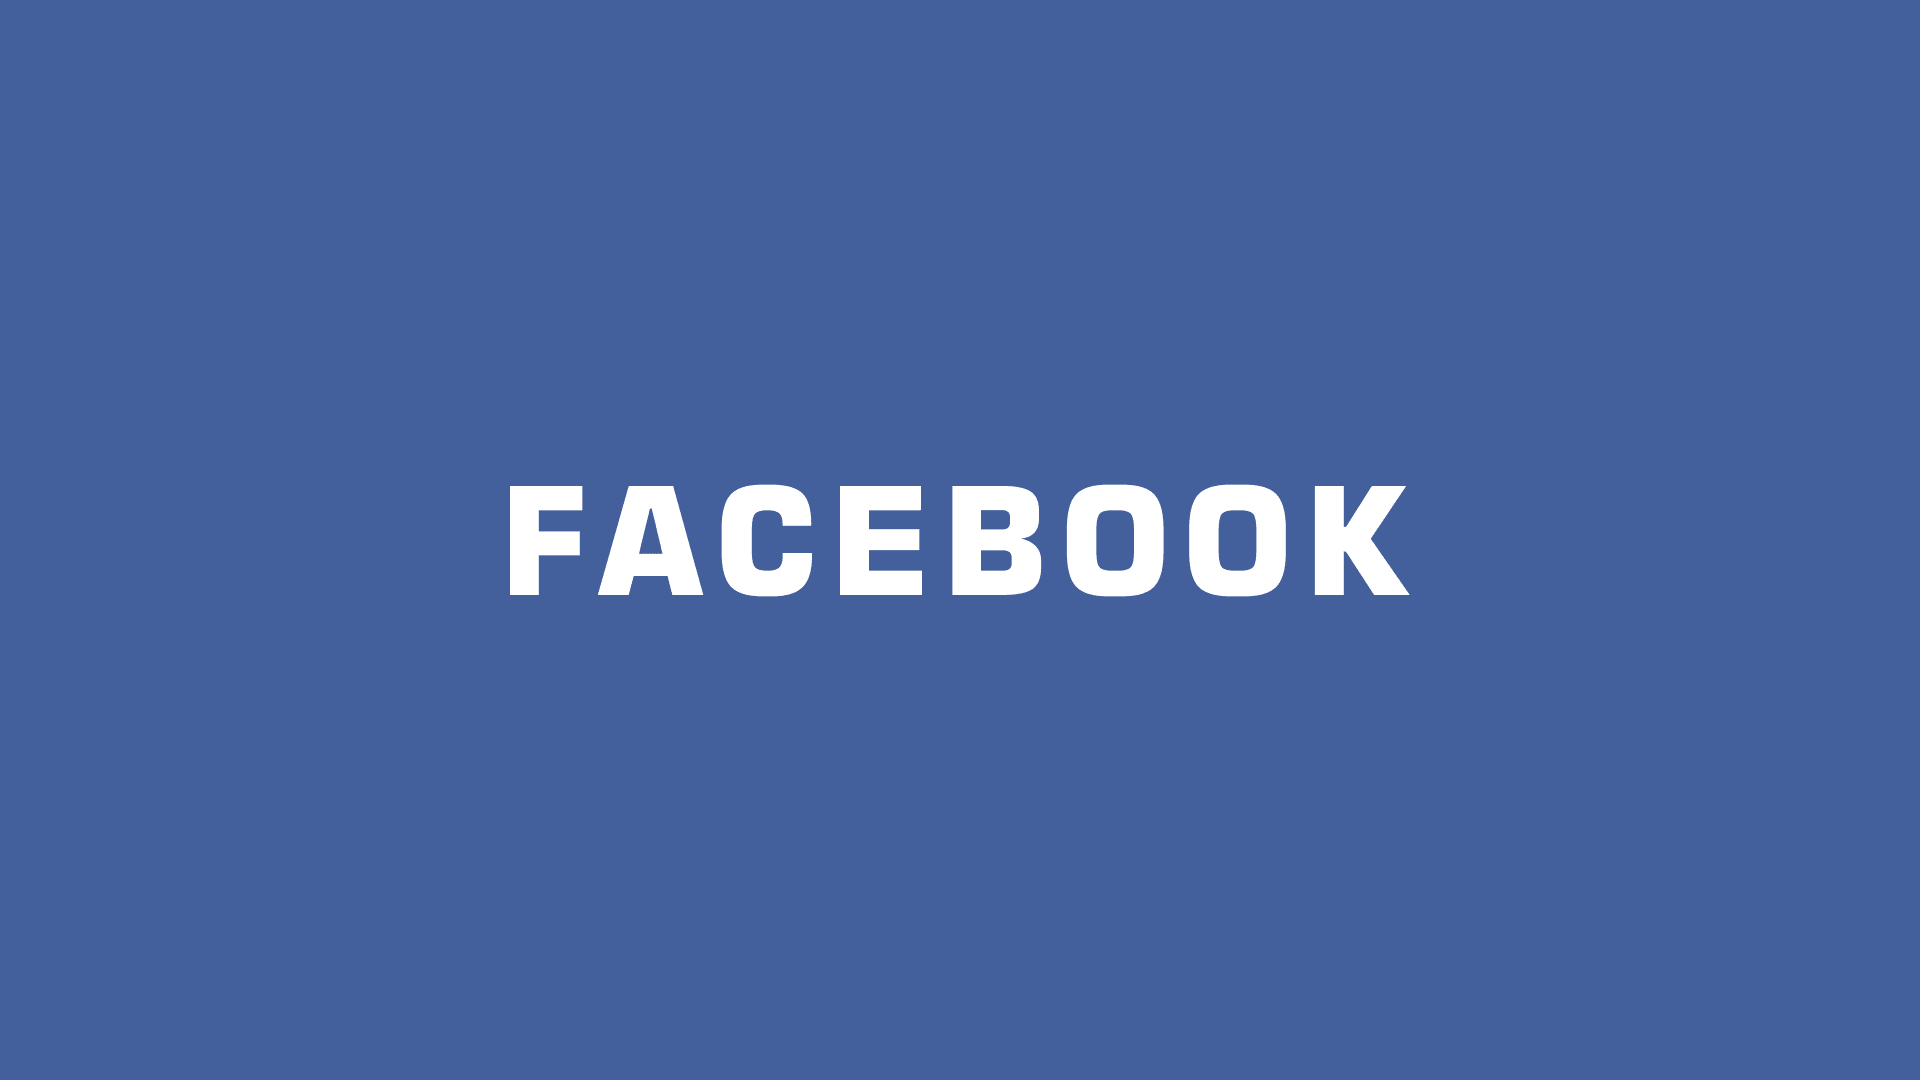 臉書 Facebook 封面設計尺寸佈局規劃 讓粉絲團更受歡迎